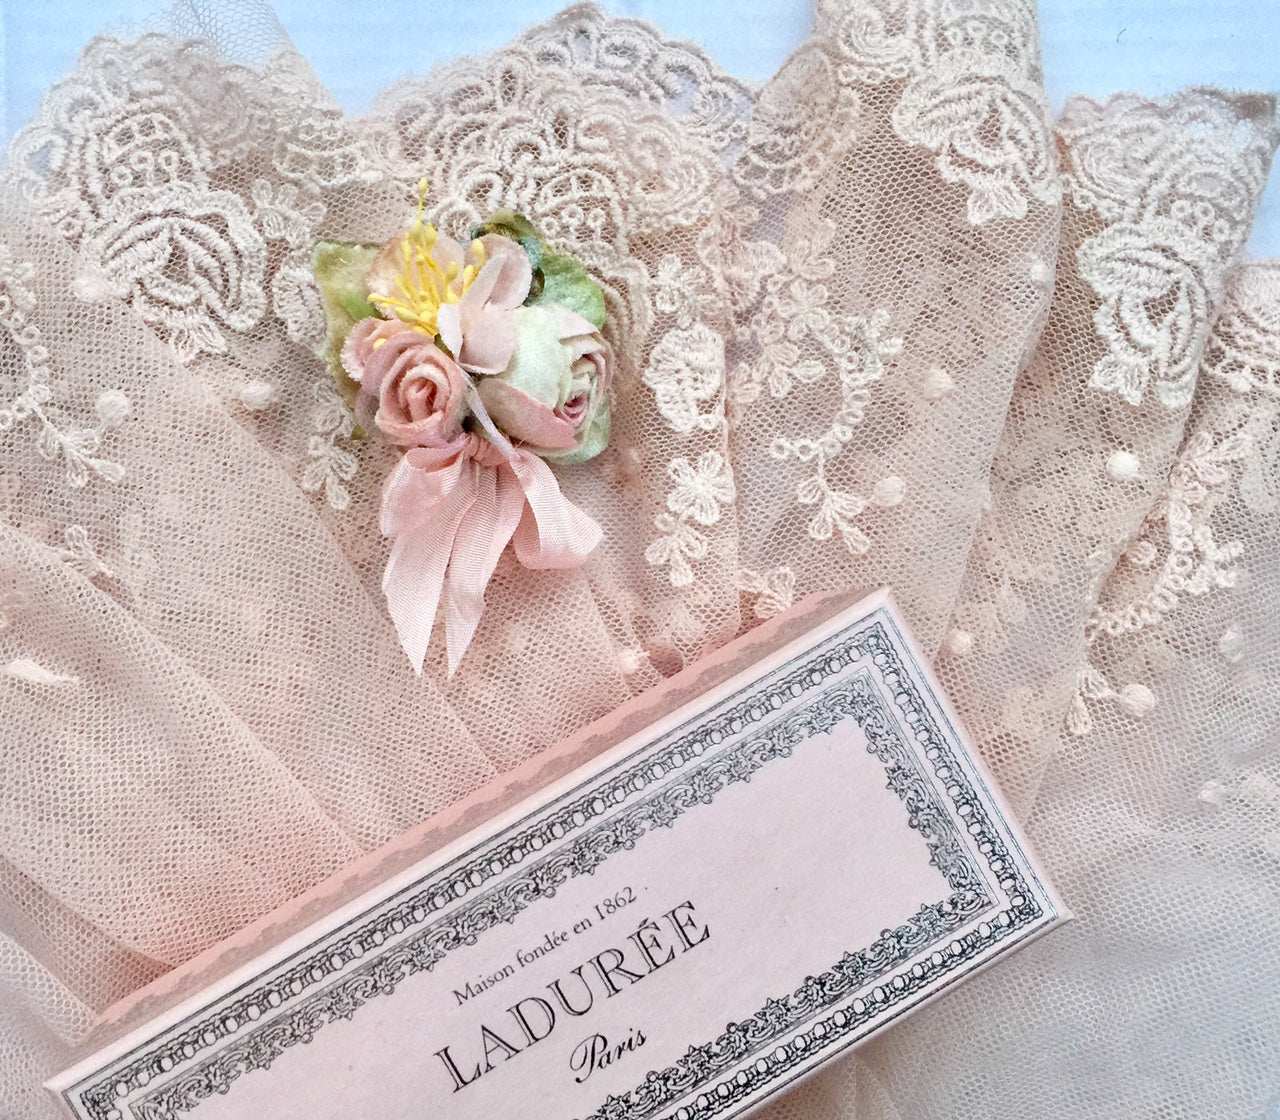 cotton Lace in Marie Antoinette Colours